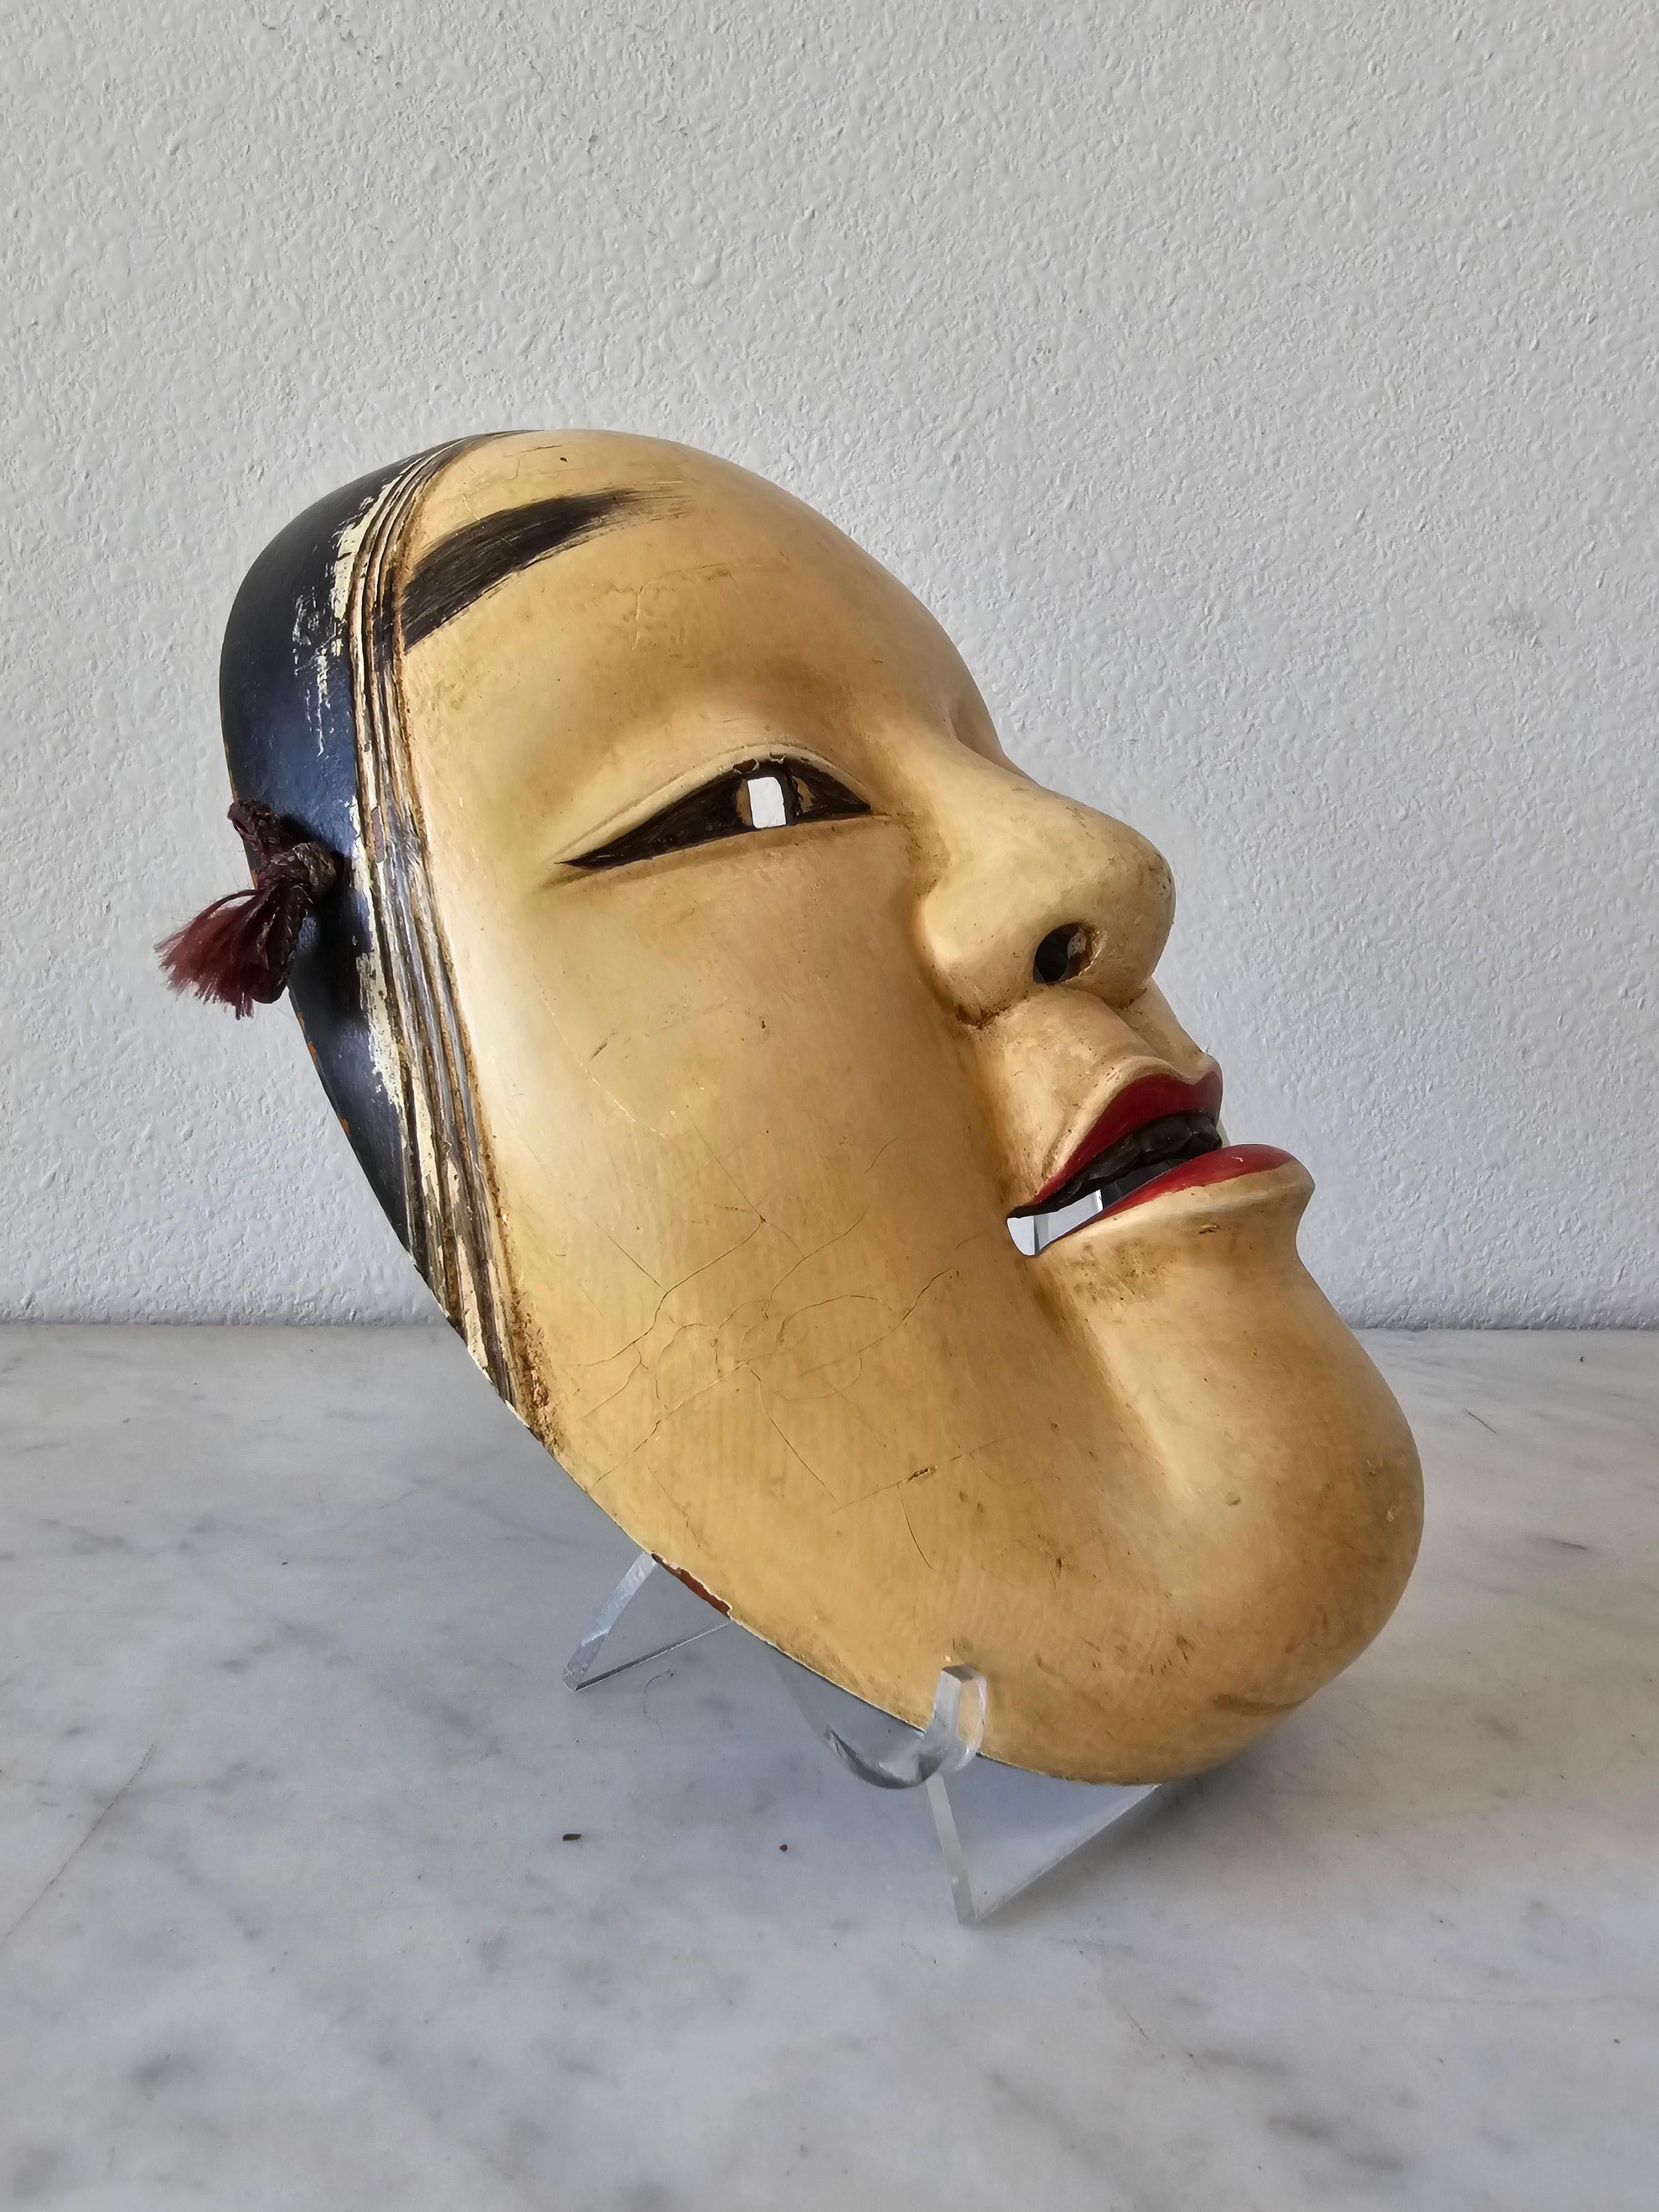 Eine seltene antike japanische Noh-Theater handgeschnitzte und bemalte Holzmaske von Ko-Omote.

Die im 19. Jahrhundert in Japan entstandenen Ko-omote (wörtlich 